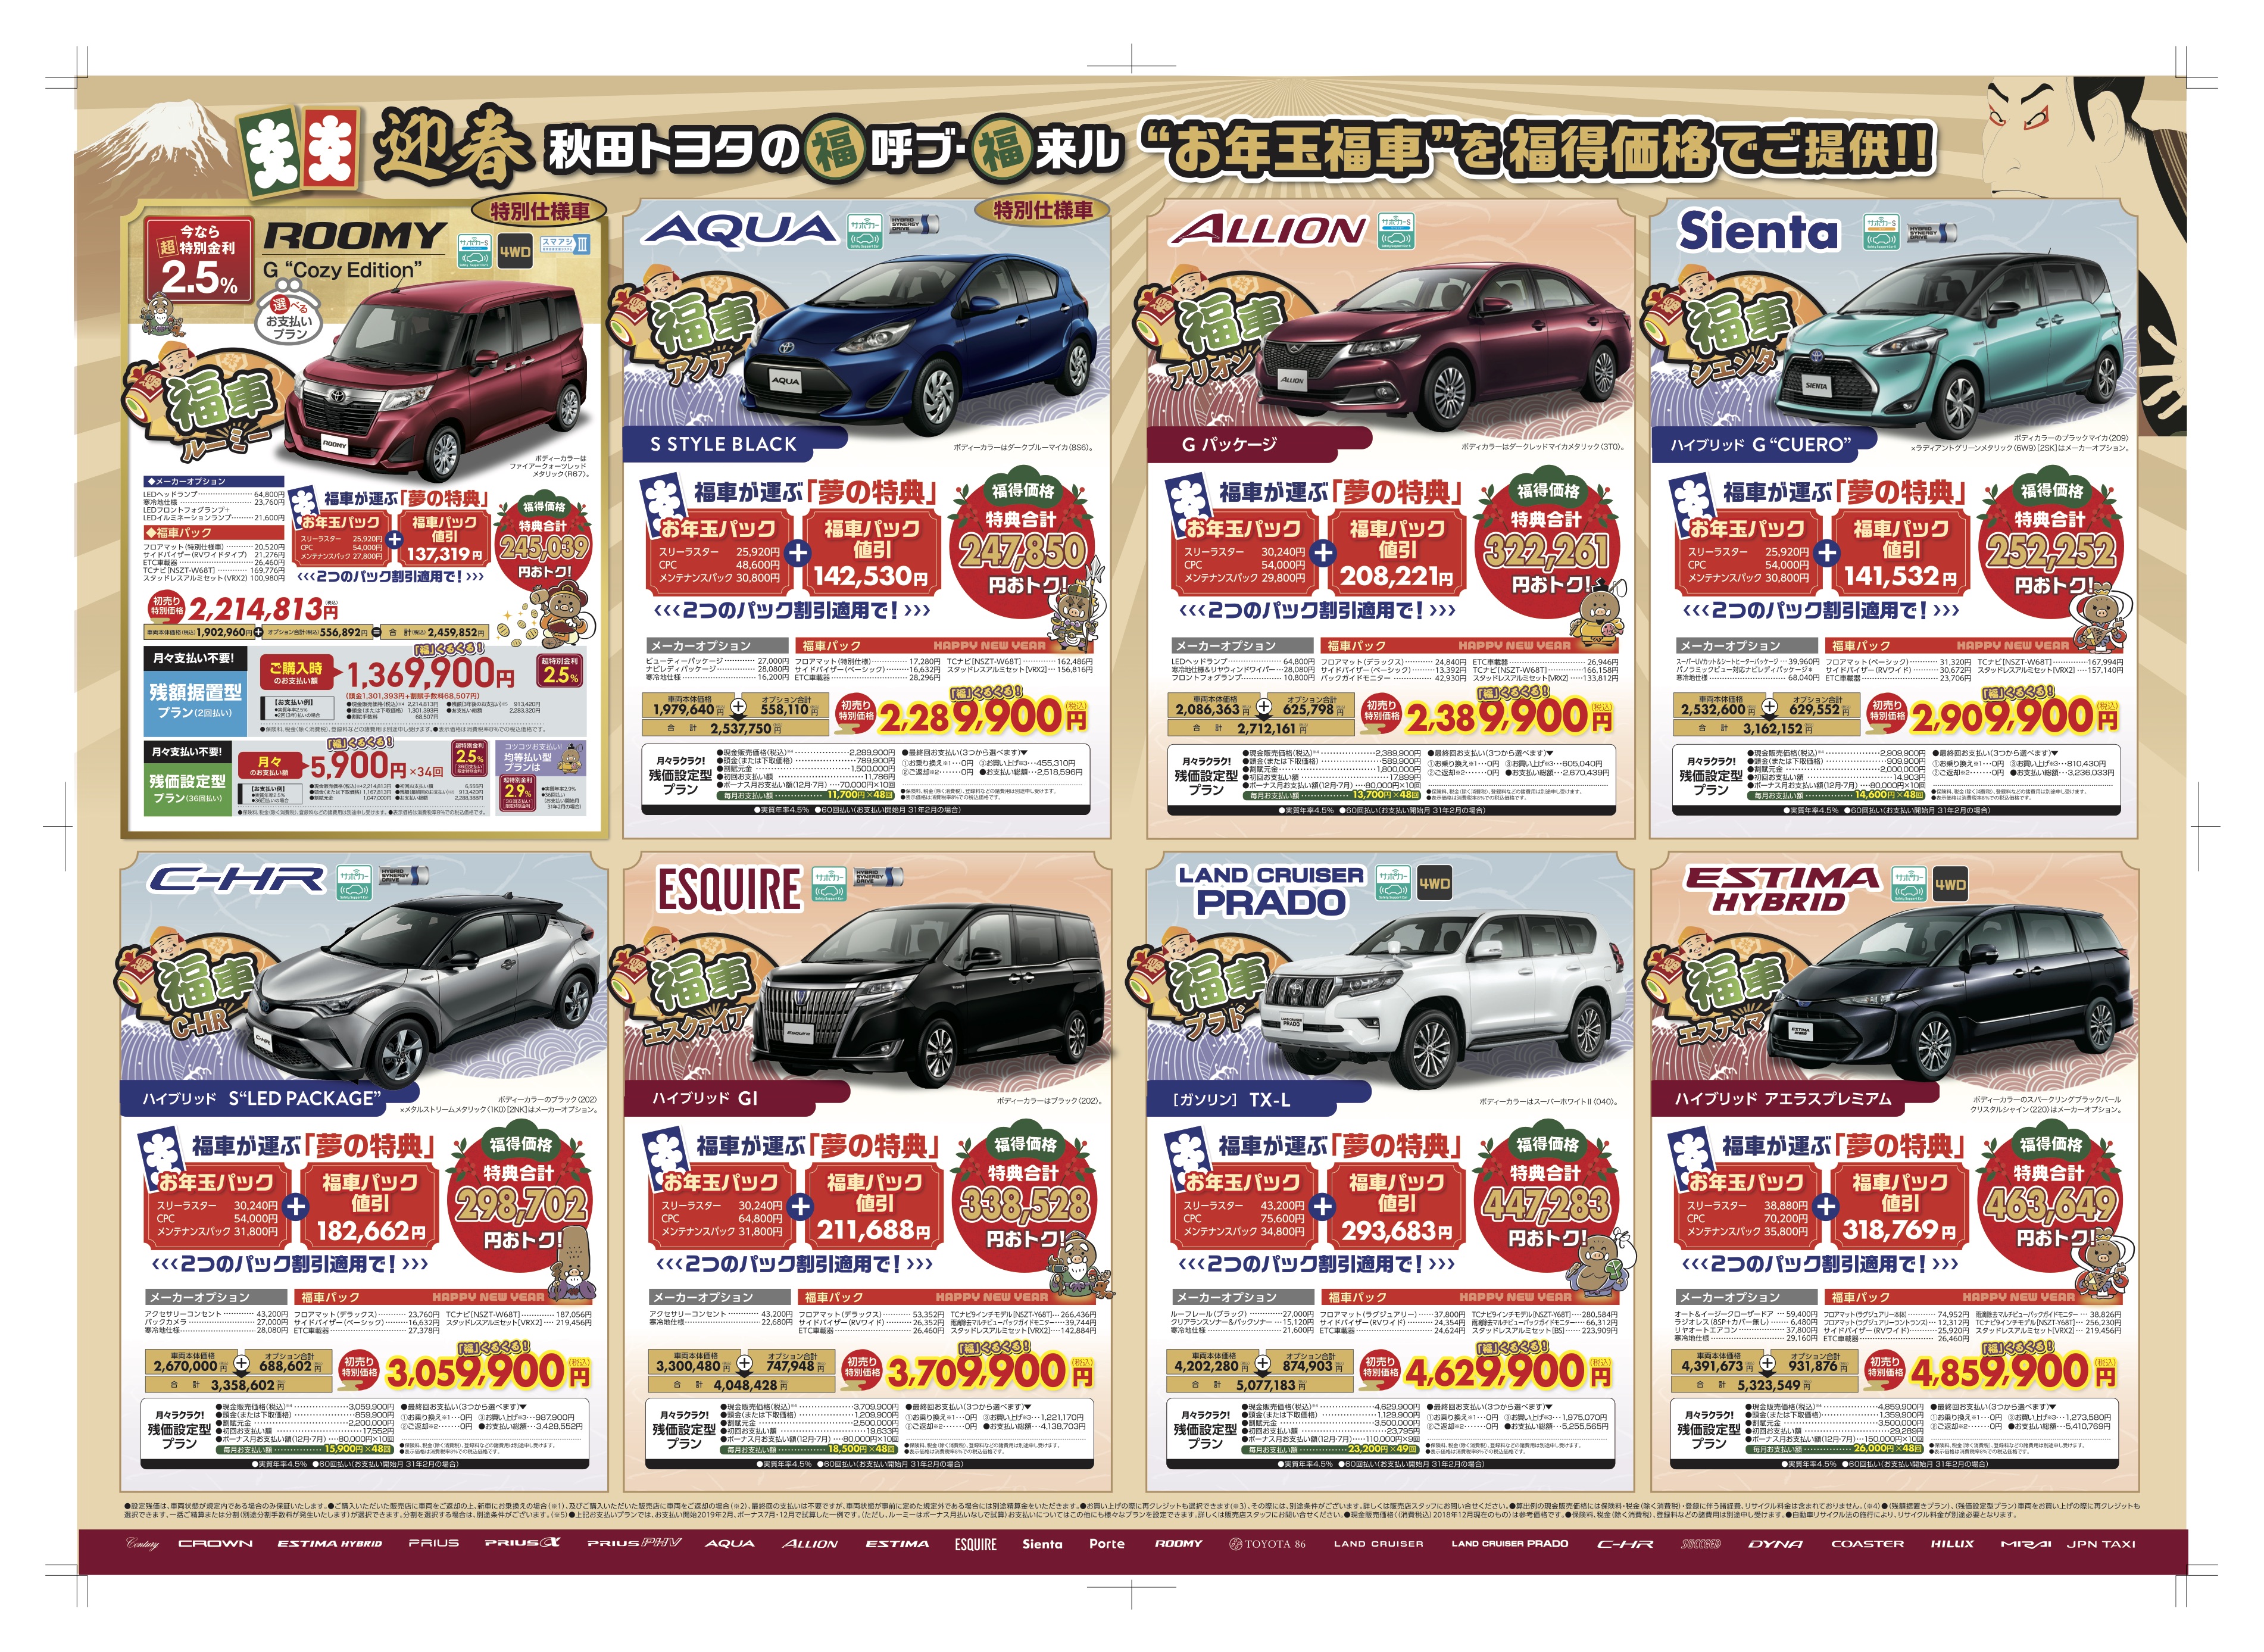 1 5 土 1 7 月 平成最後の初売り開催 秋田トヨタ自動車